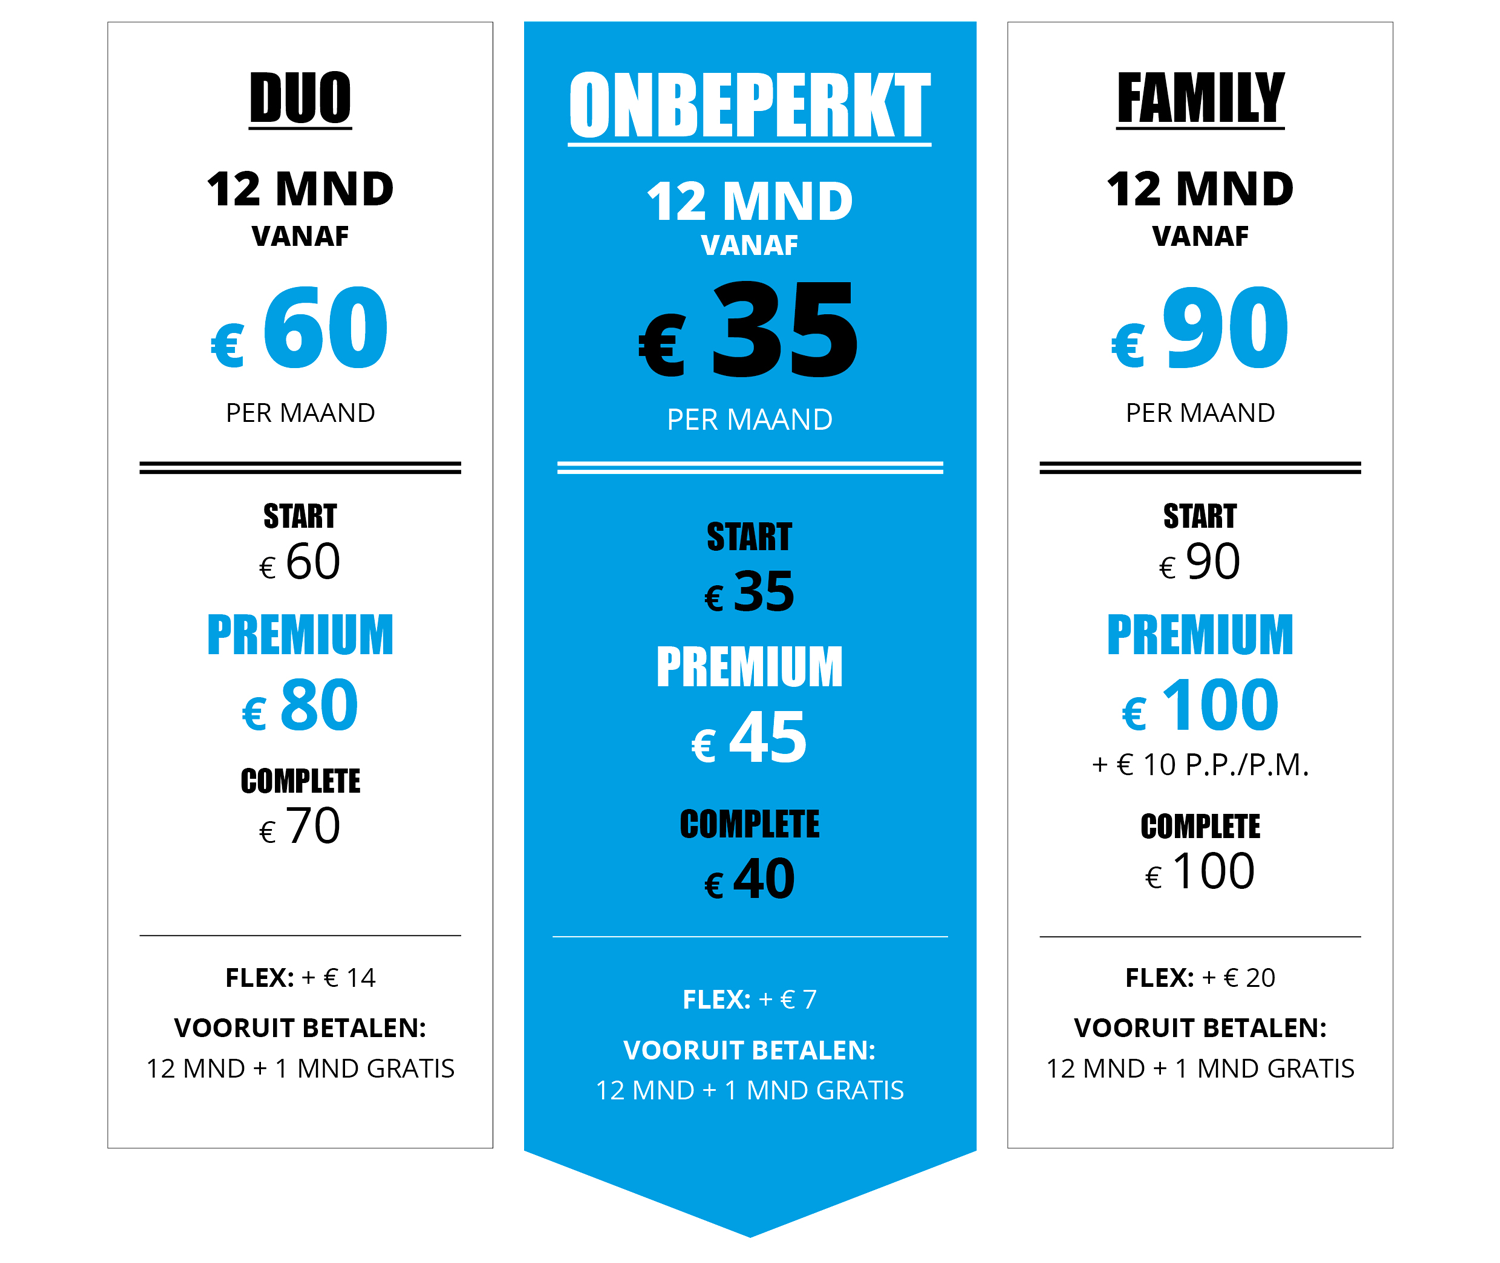 prijzen DUO - ONBEPERKT - FAMILY